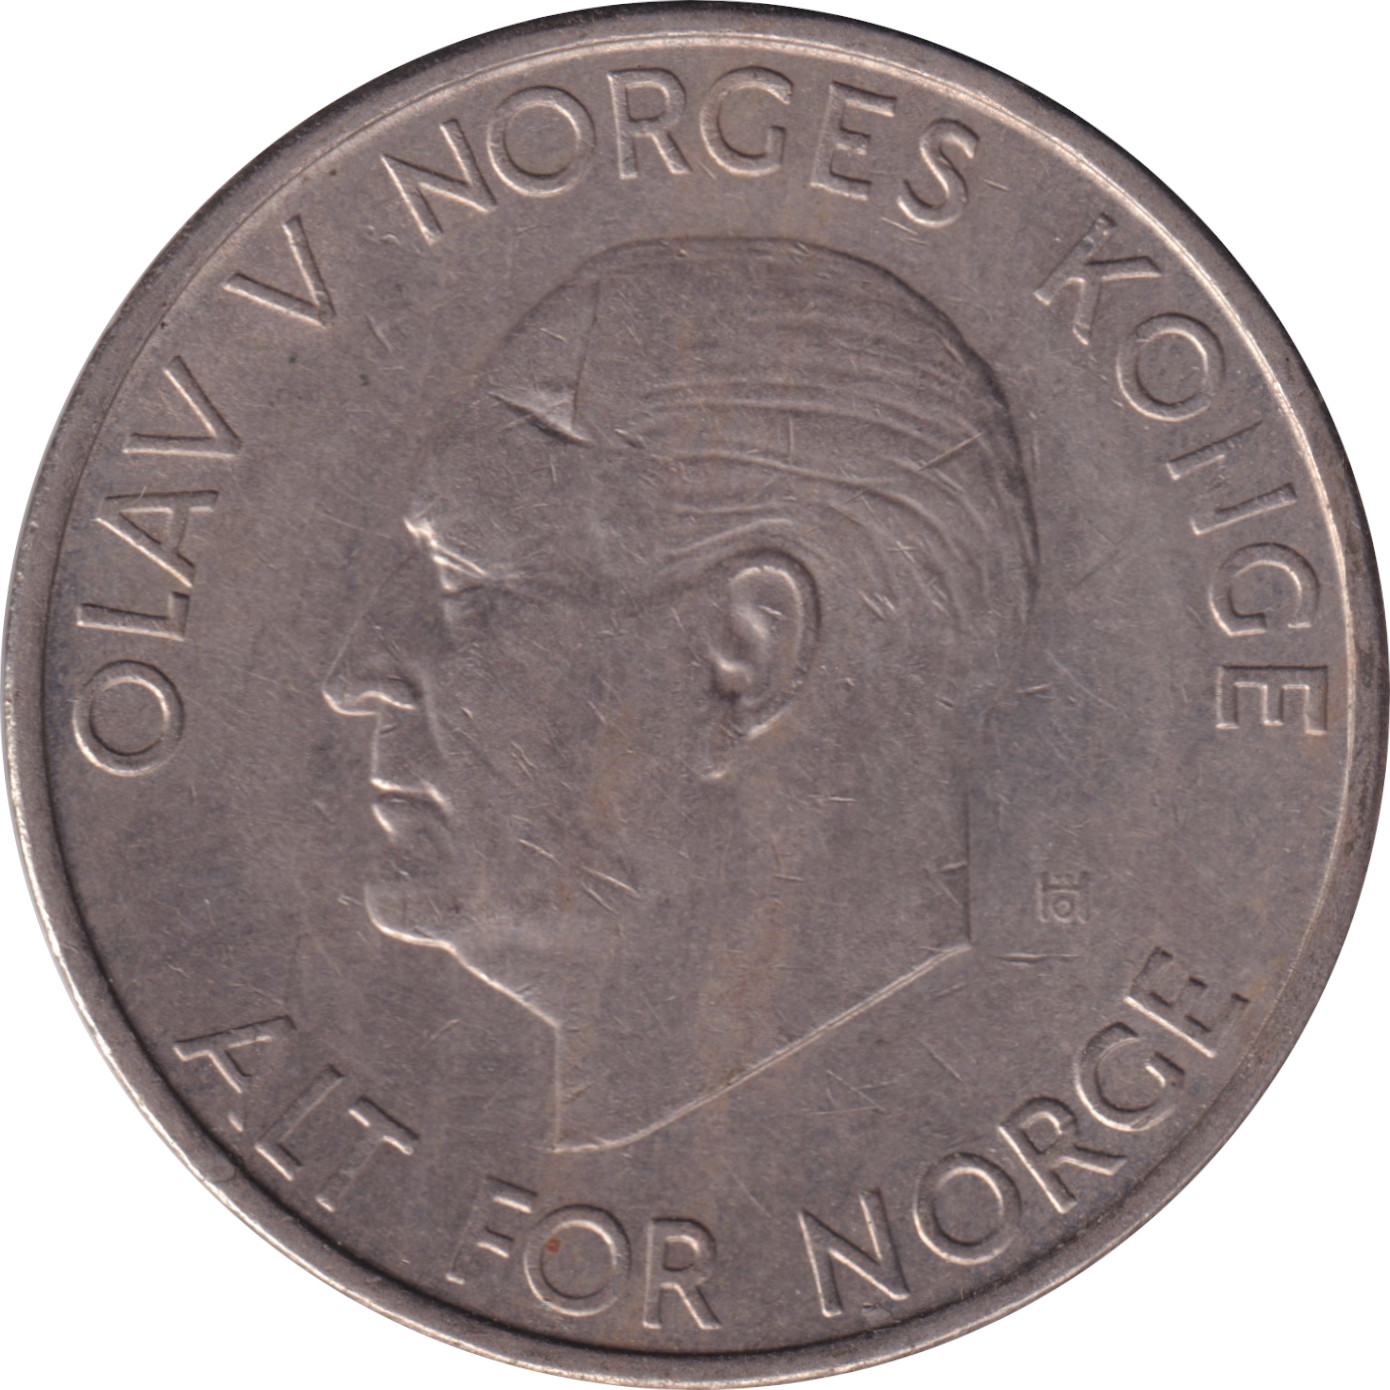 5 kroner - Olaf V - Tête mature